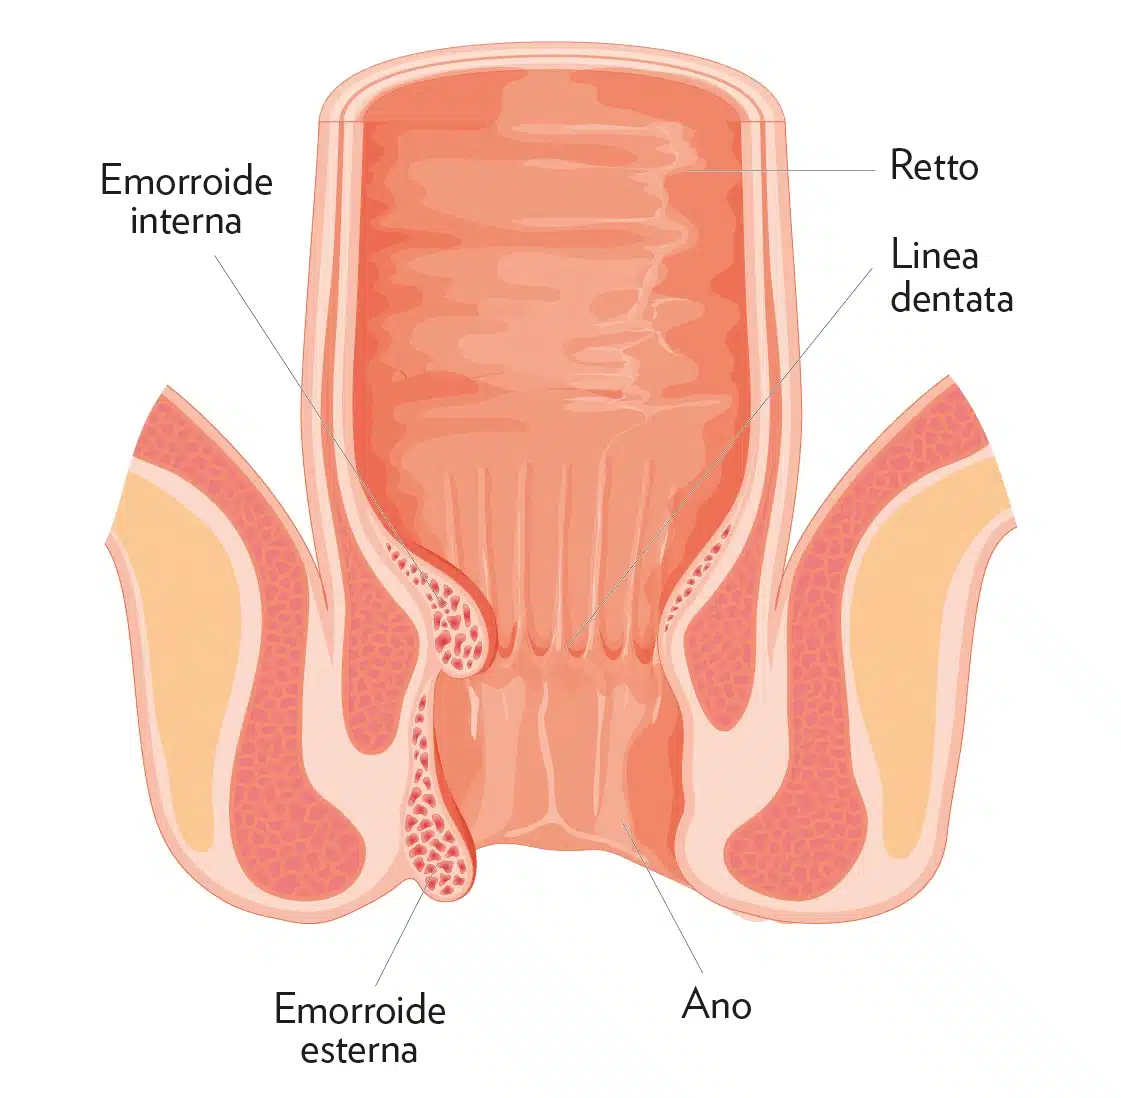 Grafica che illustra le emorroidi interne ed esterne